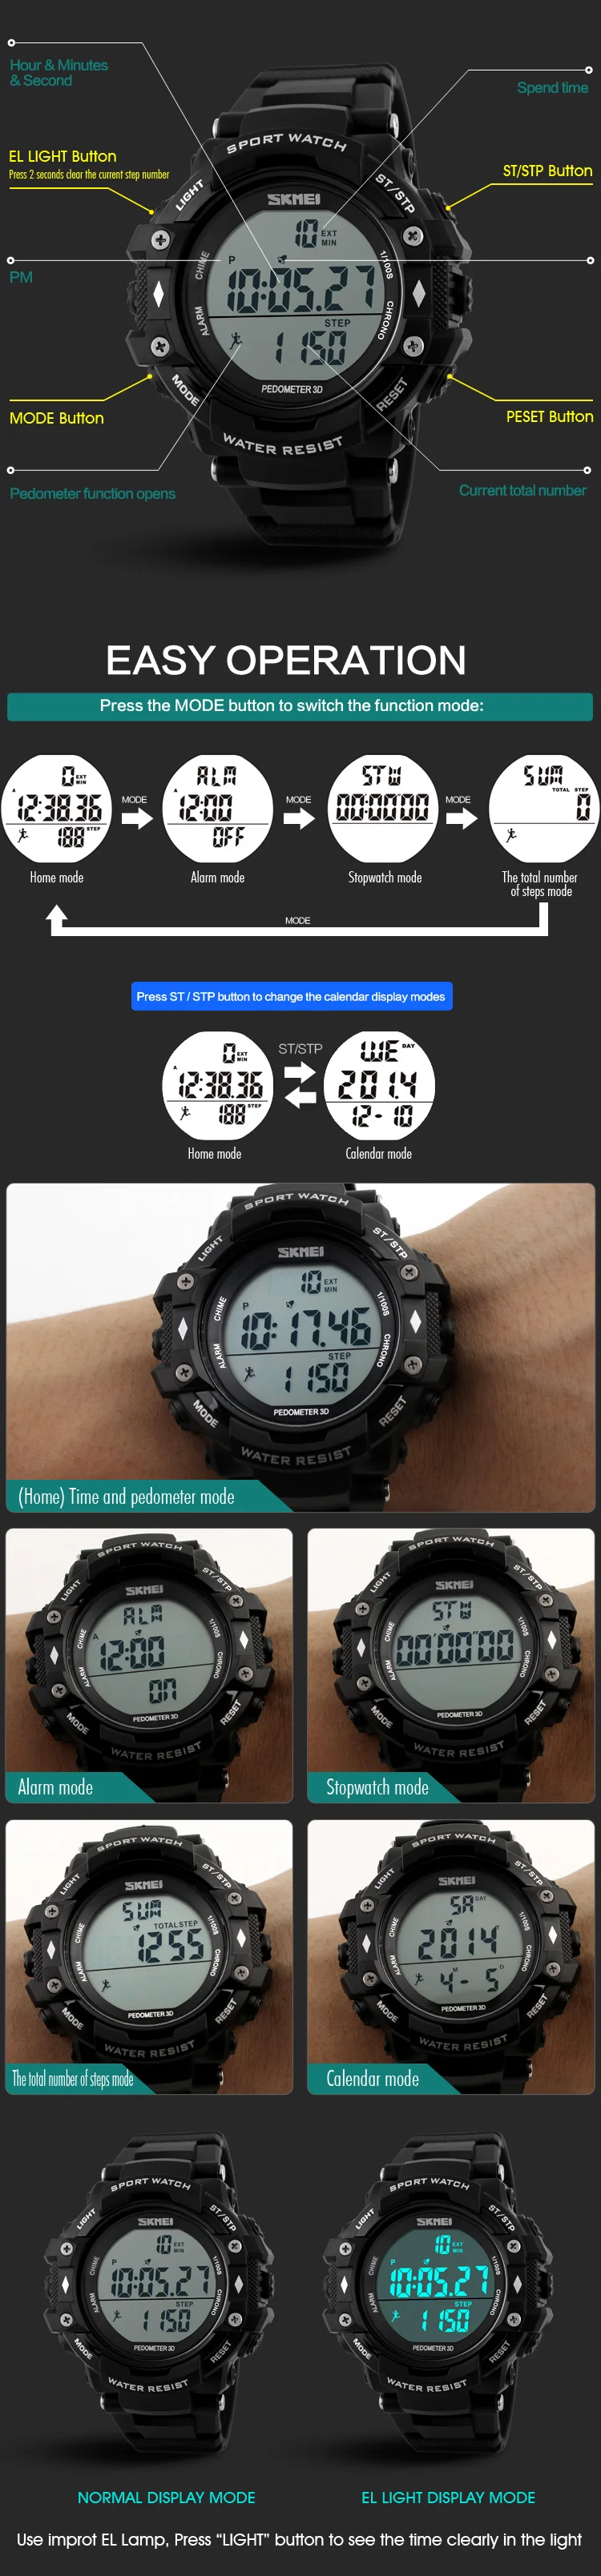 Бесплатная доставка Водонепроницаемый Спорт военные камуфляж часы Для мужчин аналоговые кварцевые цифровые часы девушка часы 1128